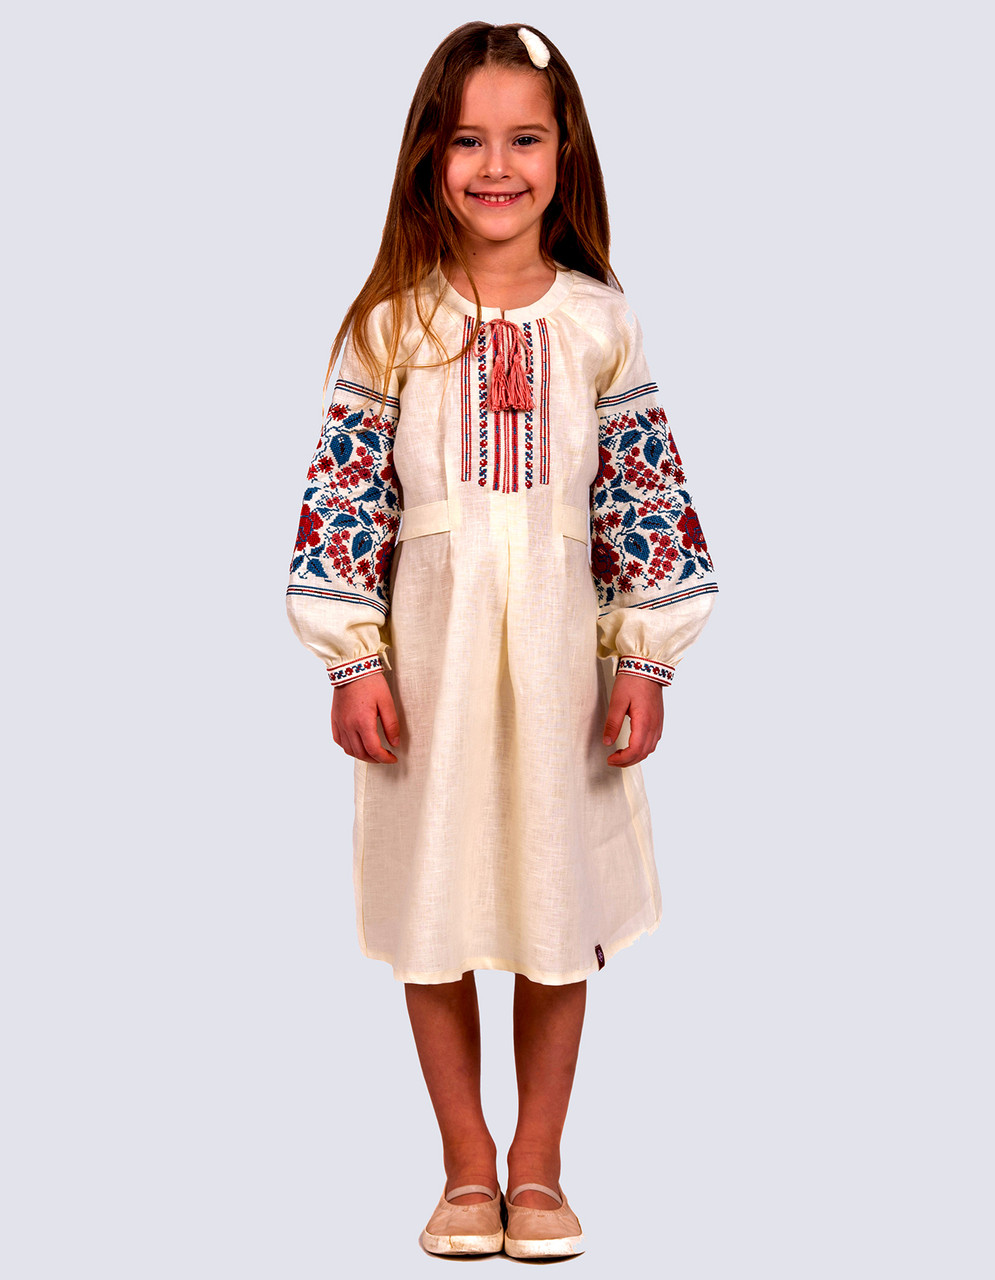 Дитяча сукня з натурального льону молочного кольору